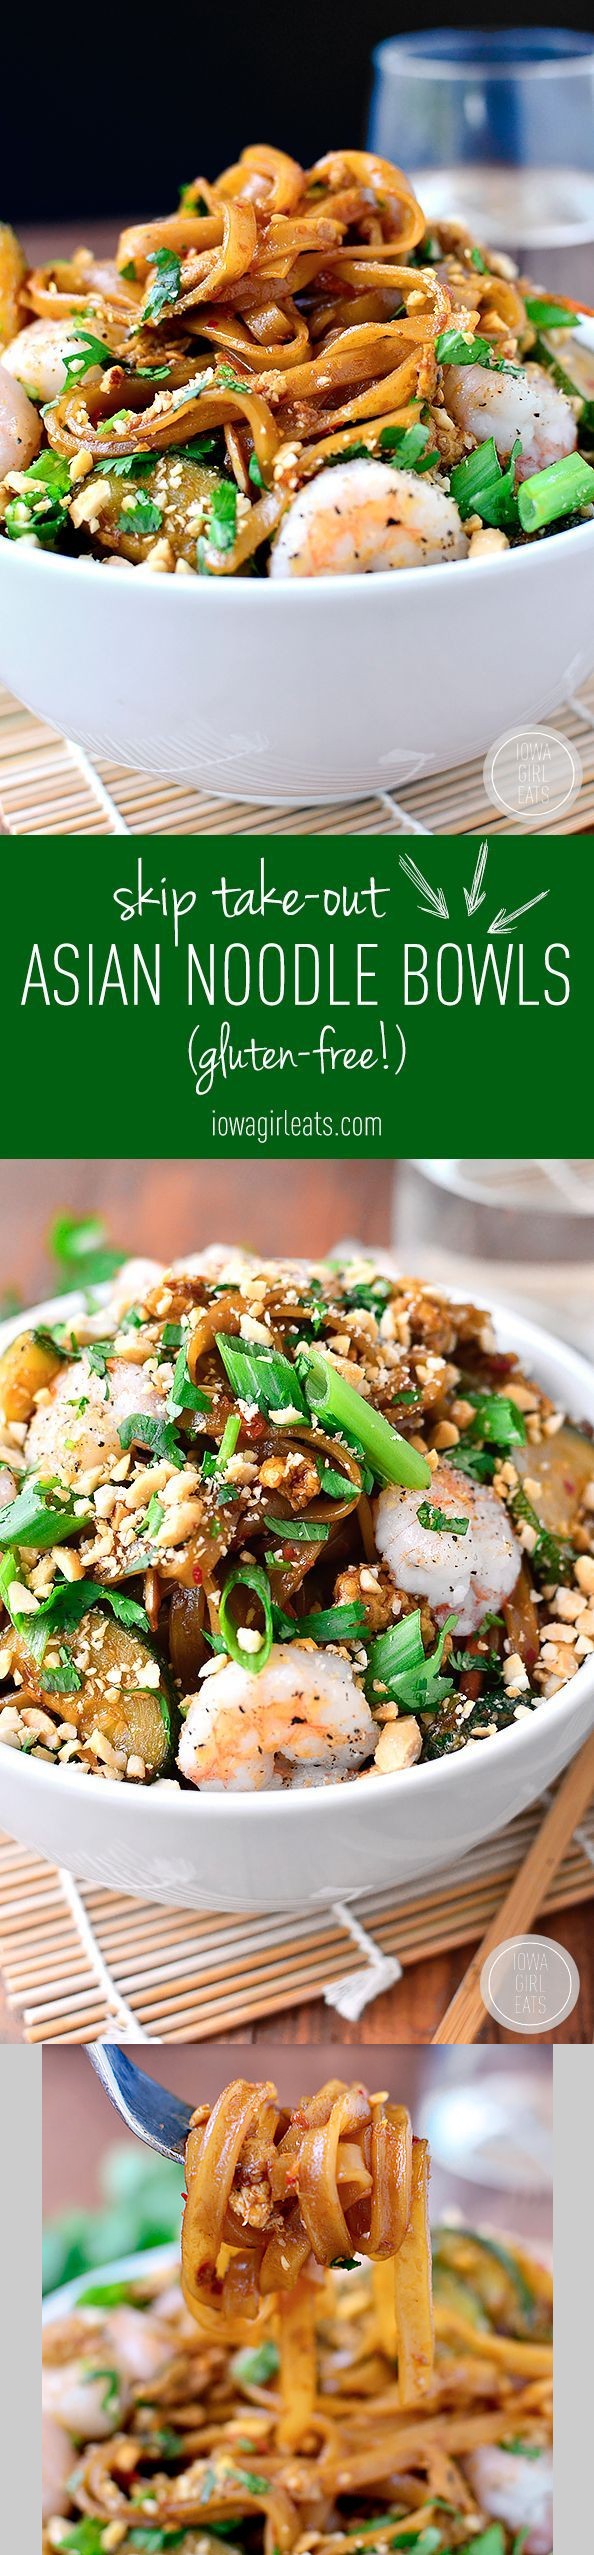 Asian Noodle Bowls